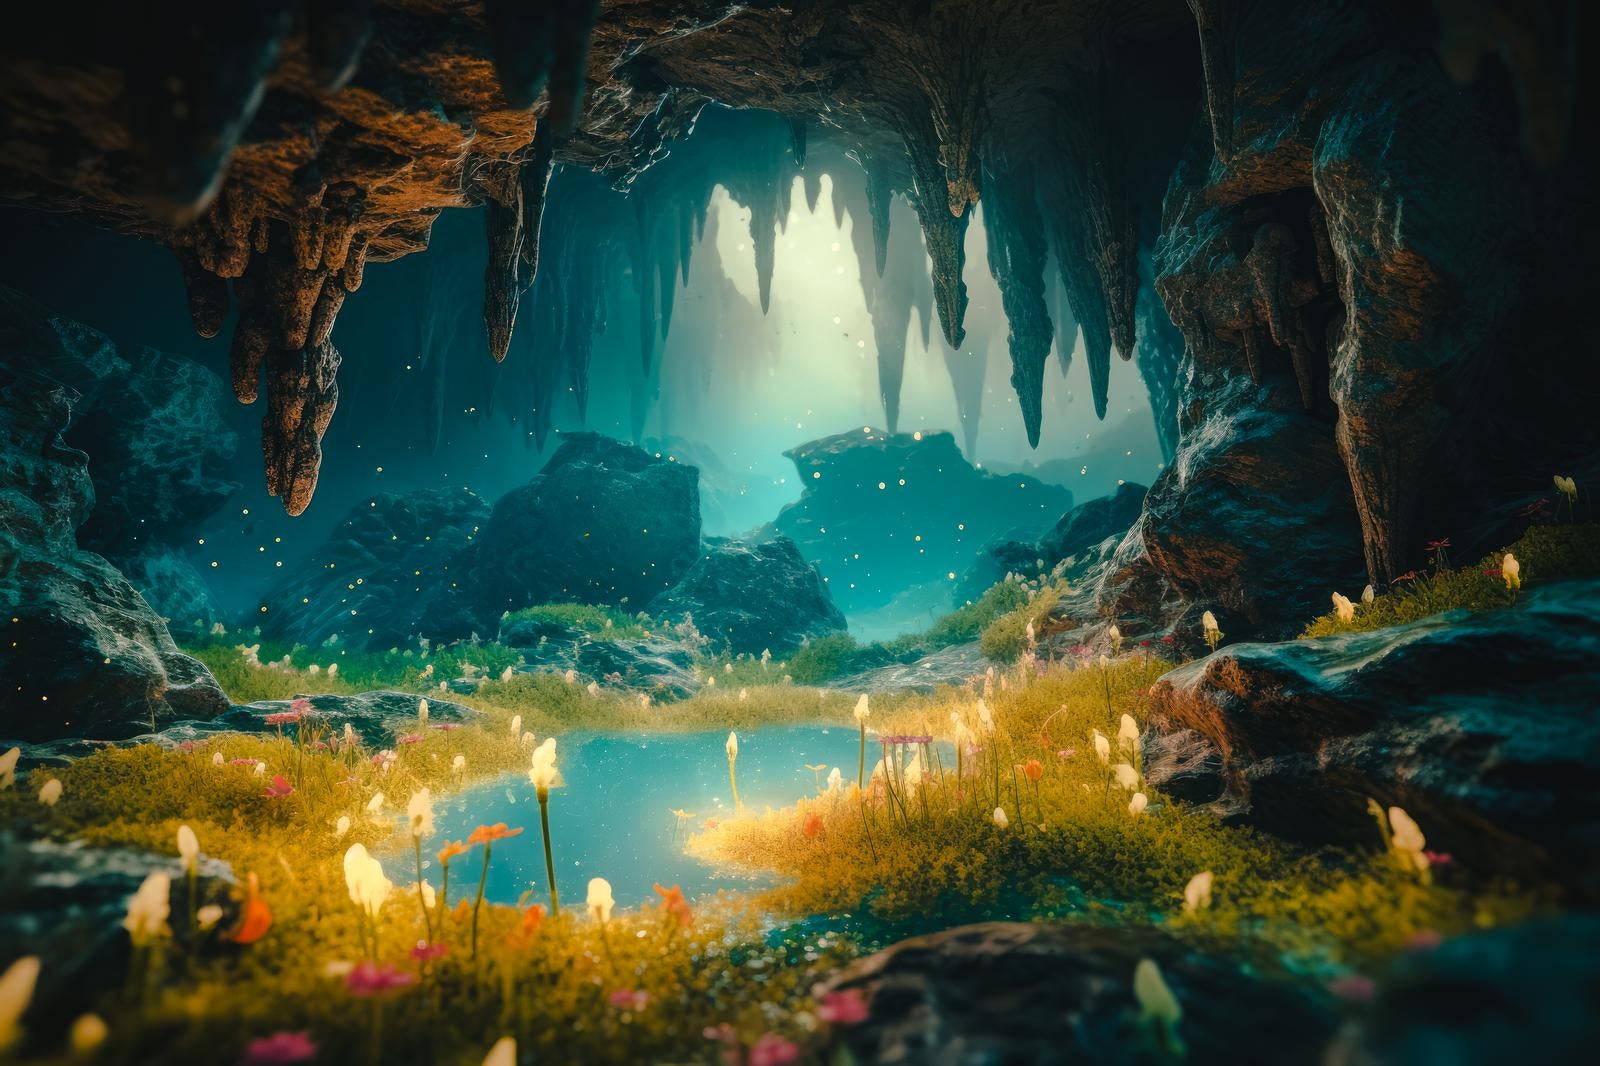 「鍾乳洞の奥深さ、植物の息吹と地下の秘密」の写真